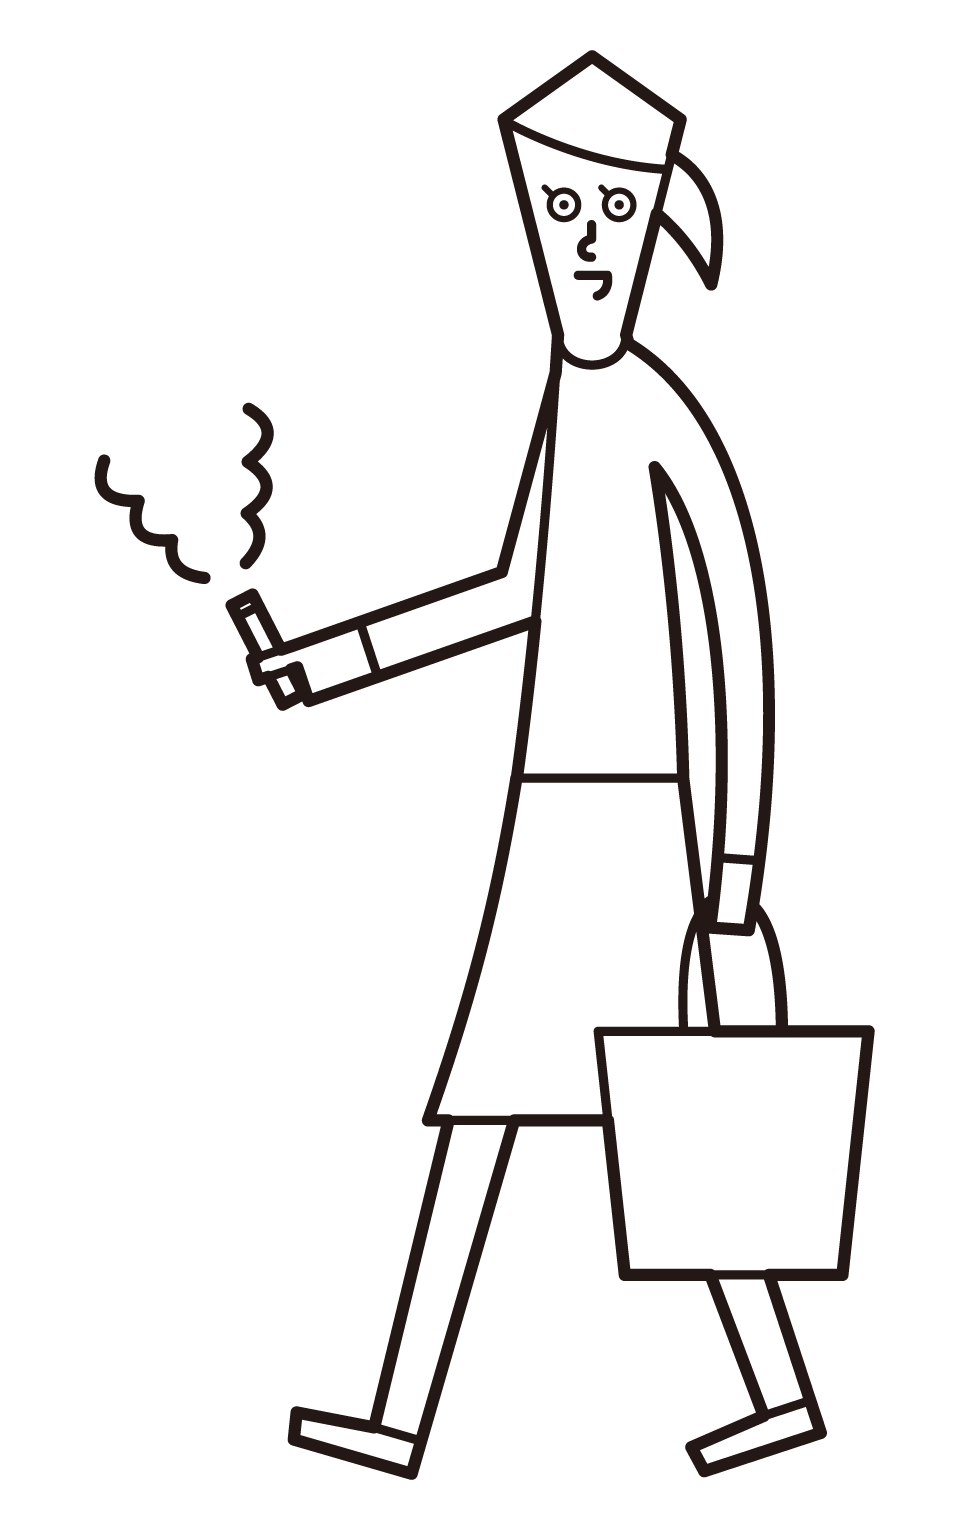 걸을 때 담배를 피우는 사람 (여성)의 그림